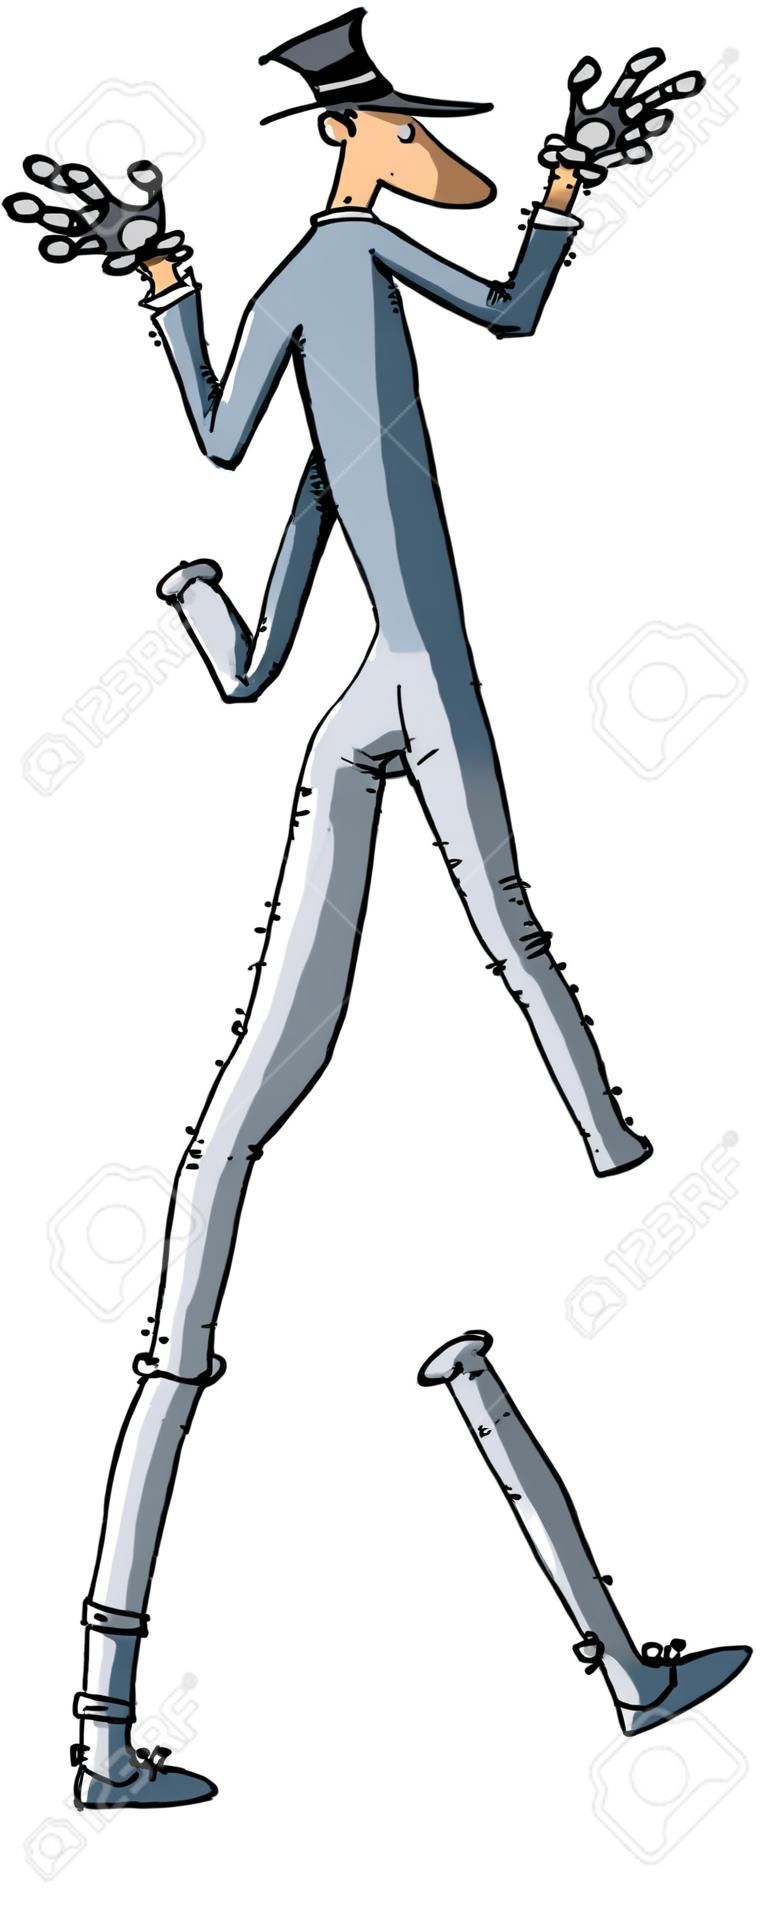 Un hombre de dibujos animados con las piernas muy largas.